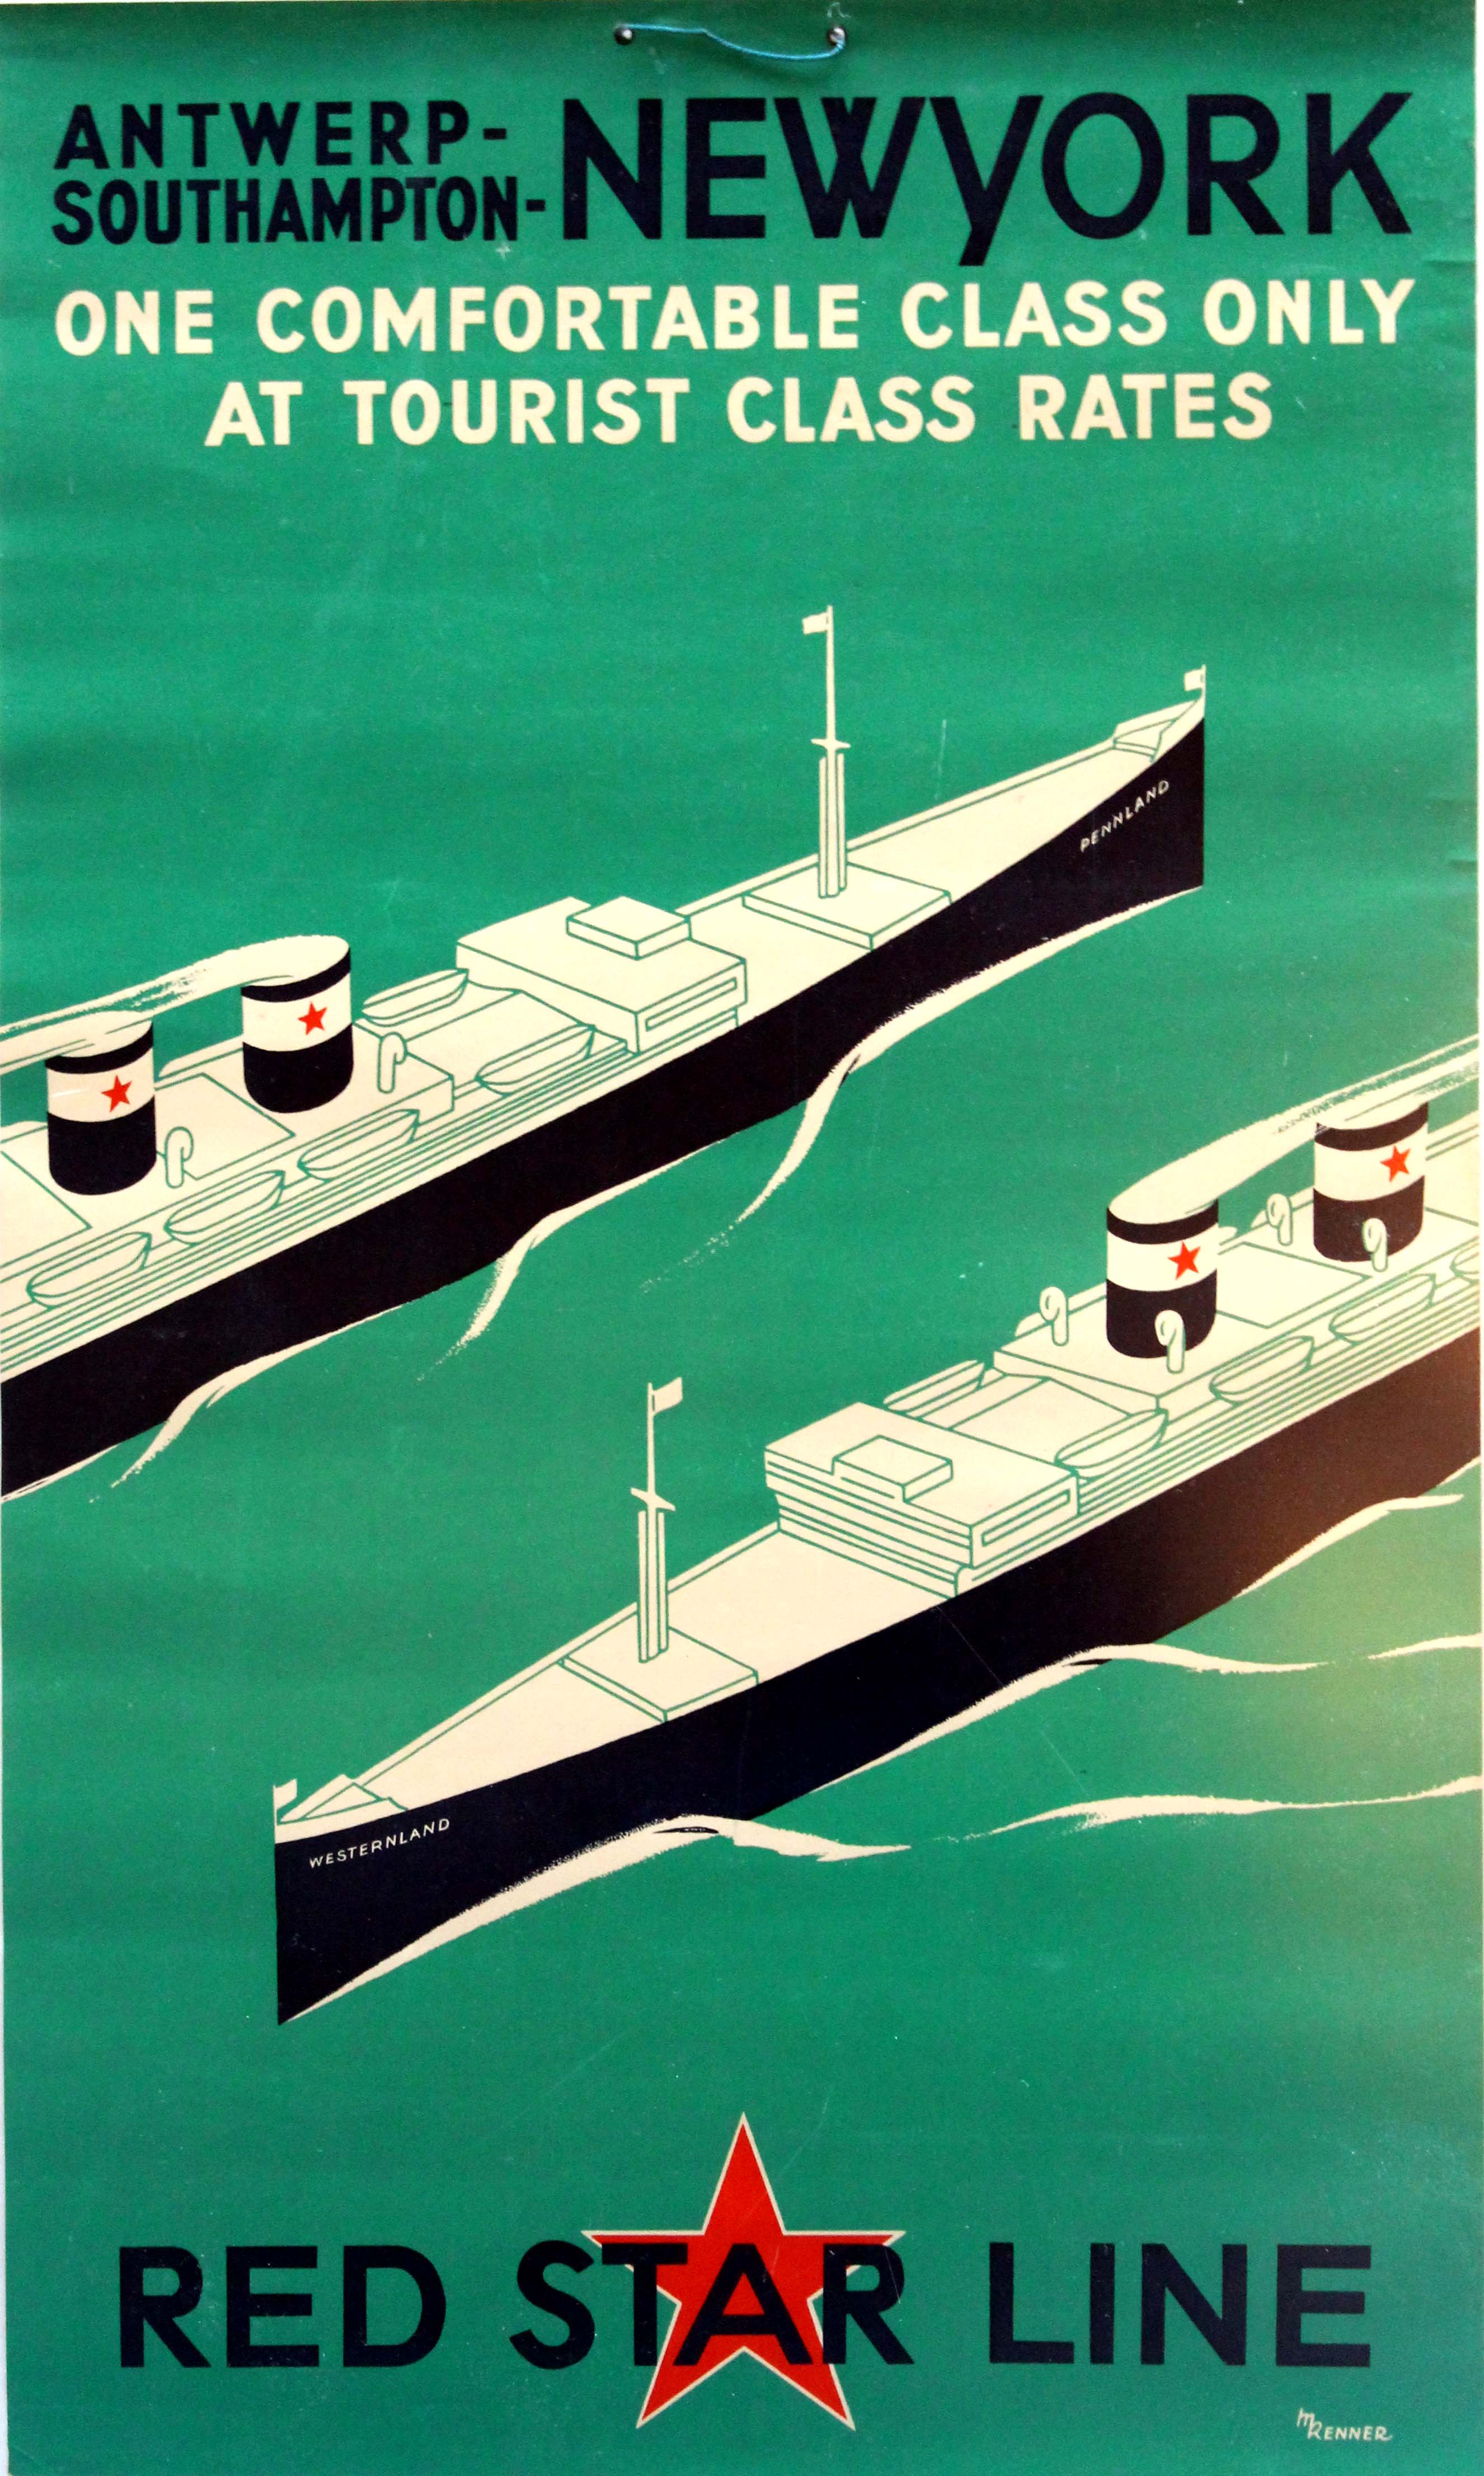 Red Star Line Vintage Travel Poster vship 029 Kunstdruck A4 A3 A2 A1 